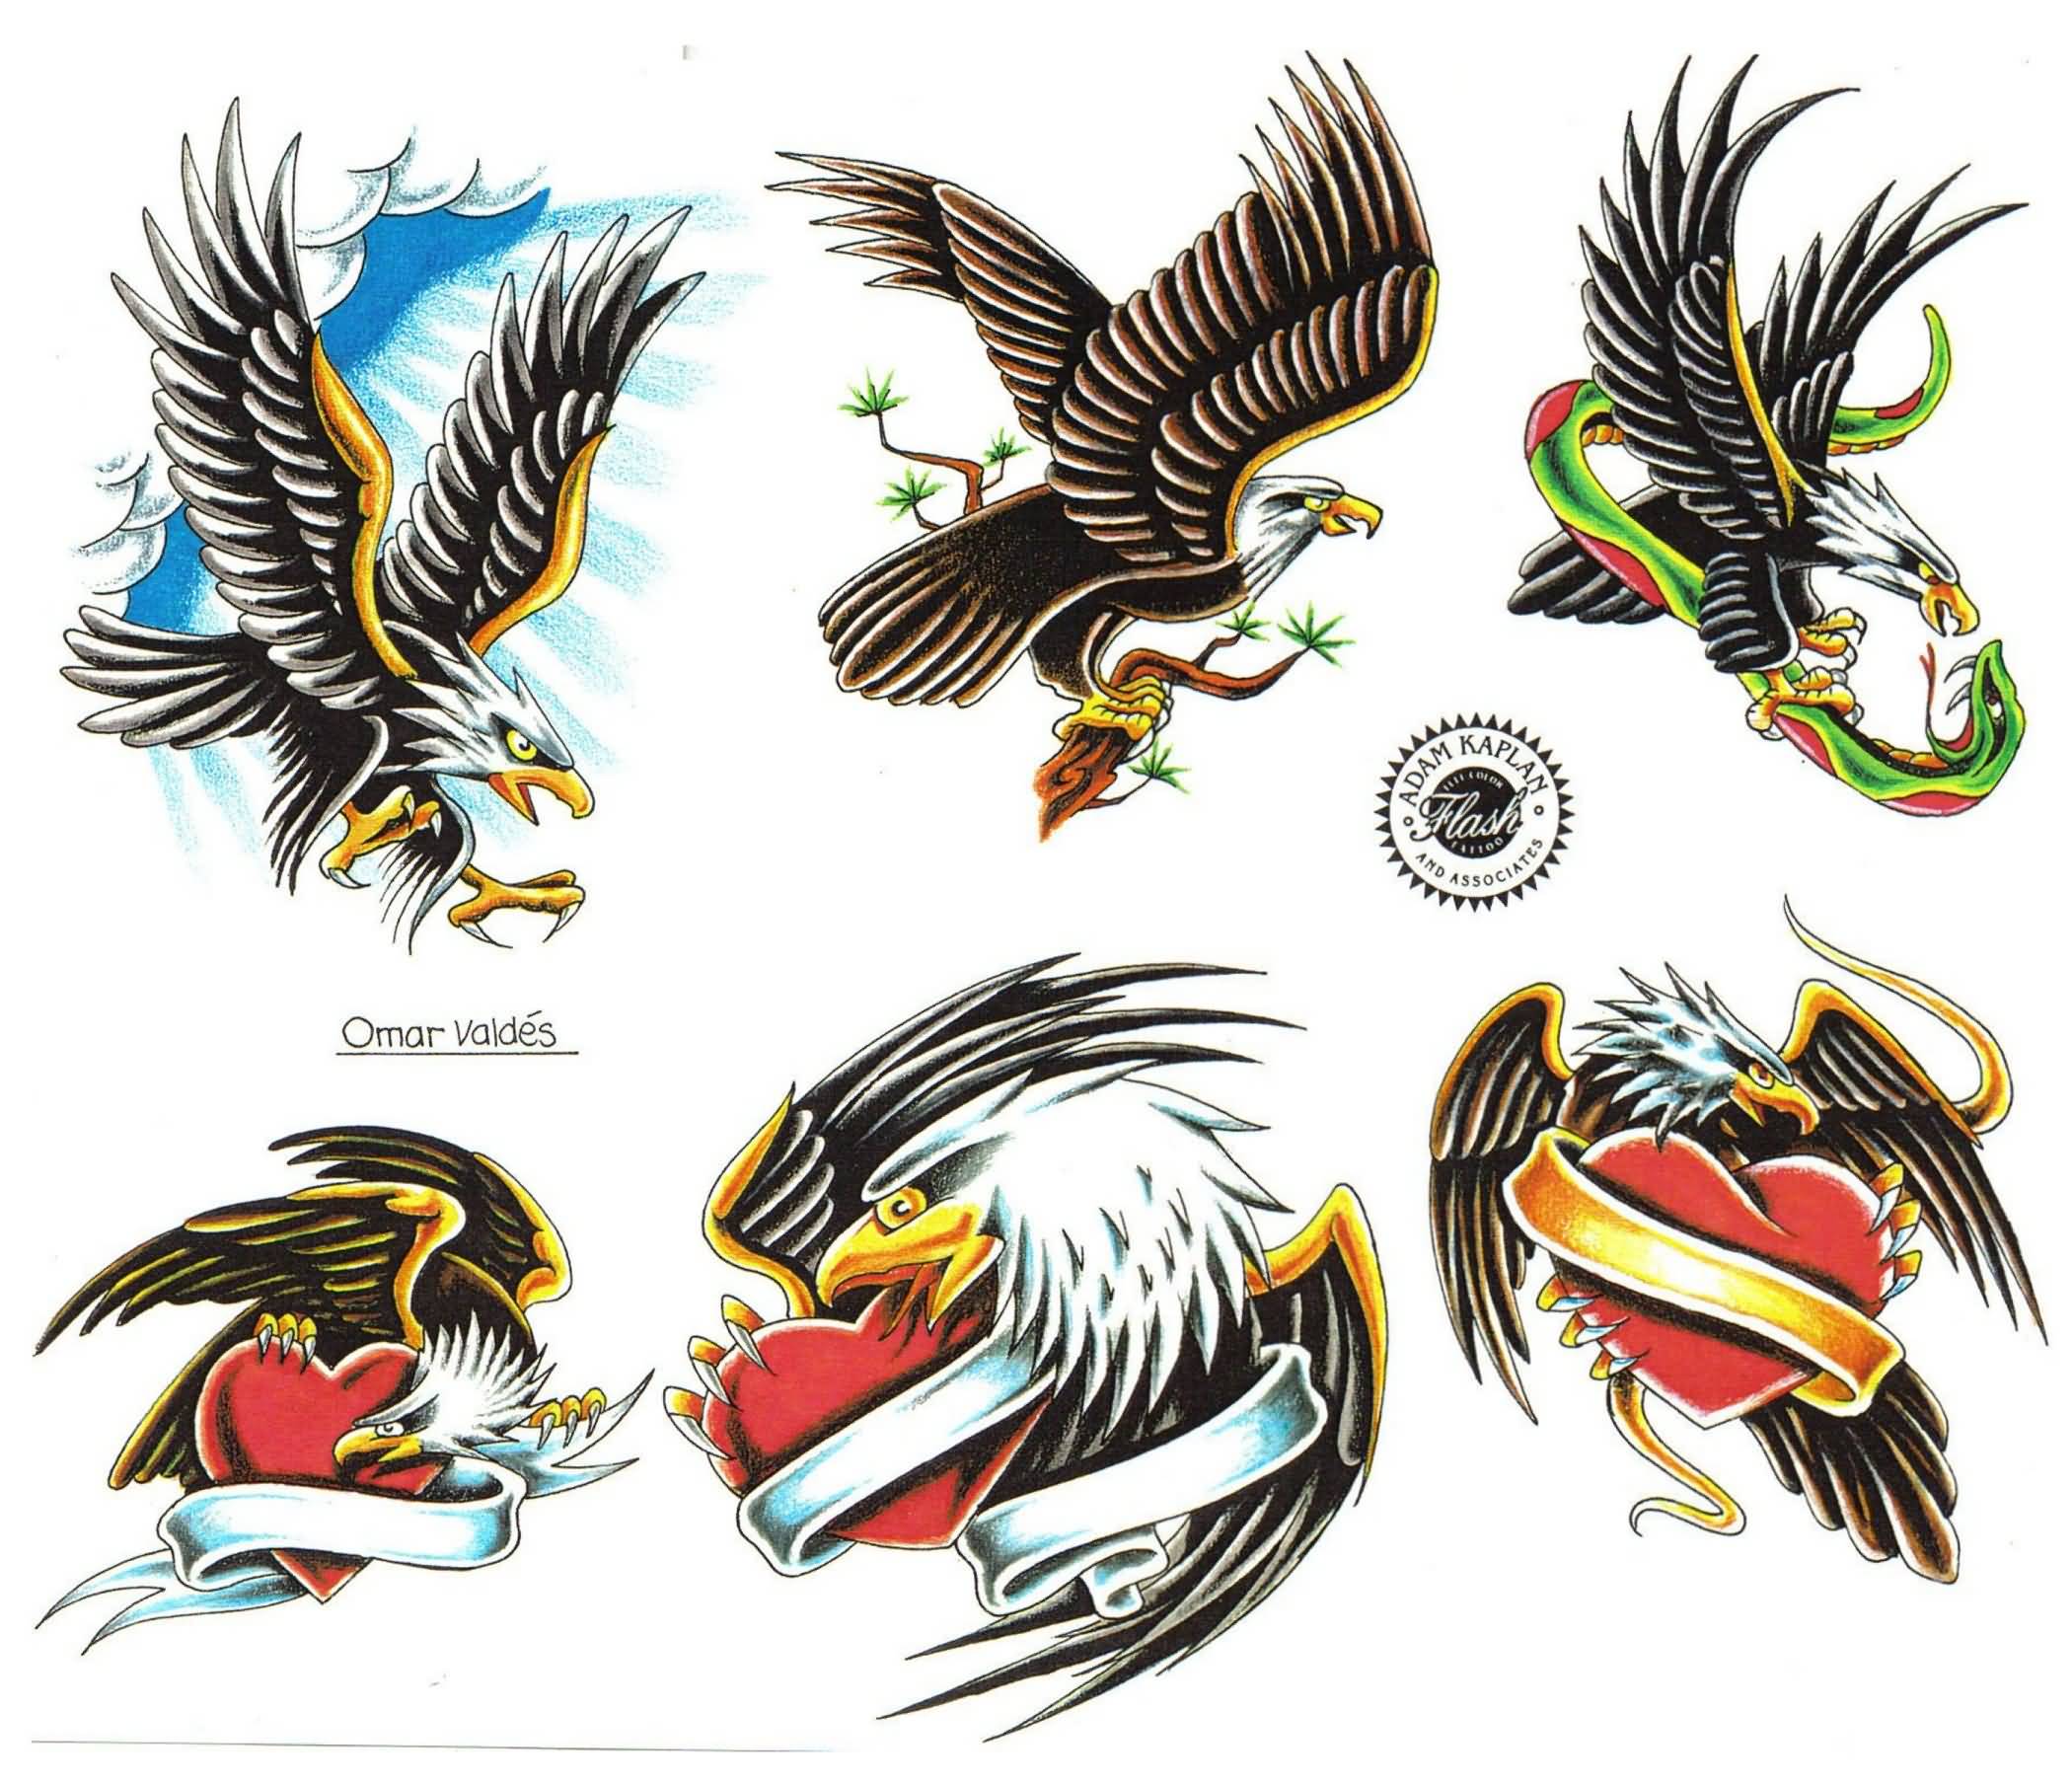 28+ Flying Eagle Tattoos Designs